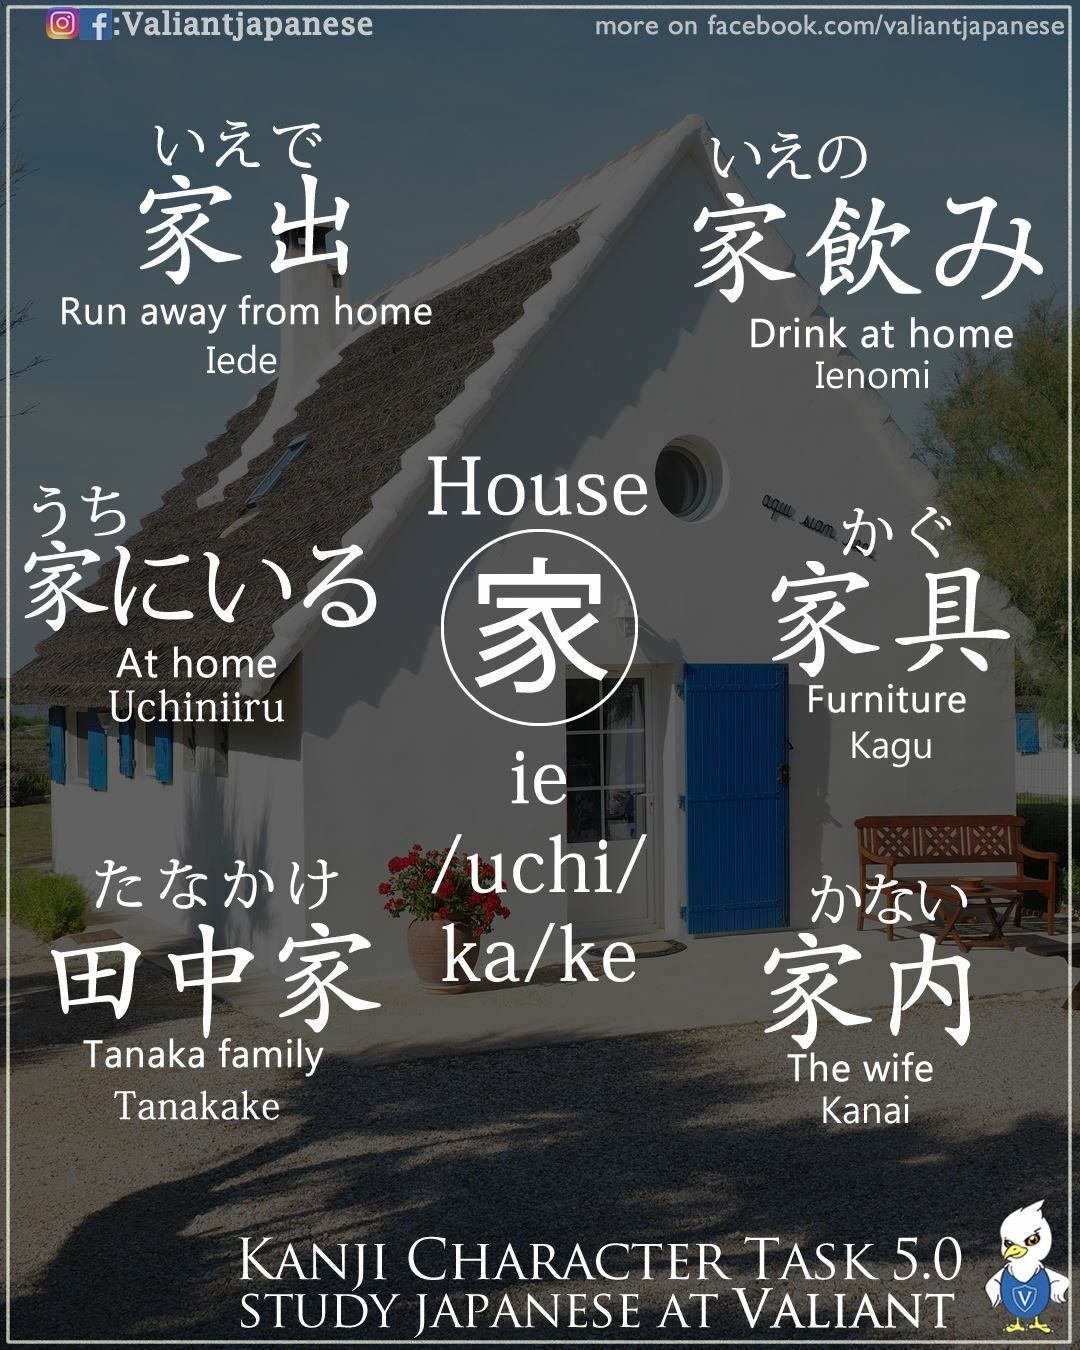 Como dizer “casa” em japonês